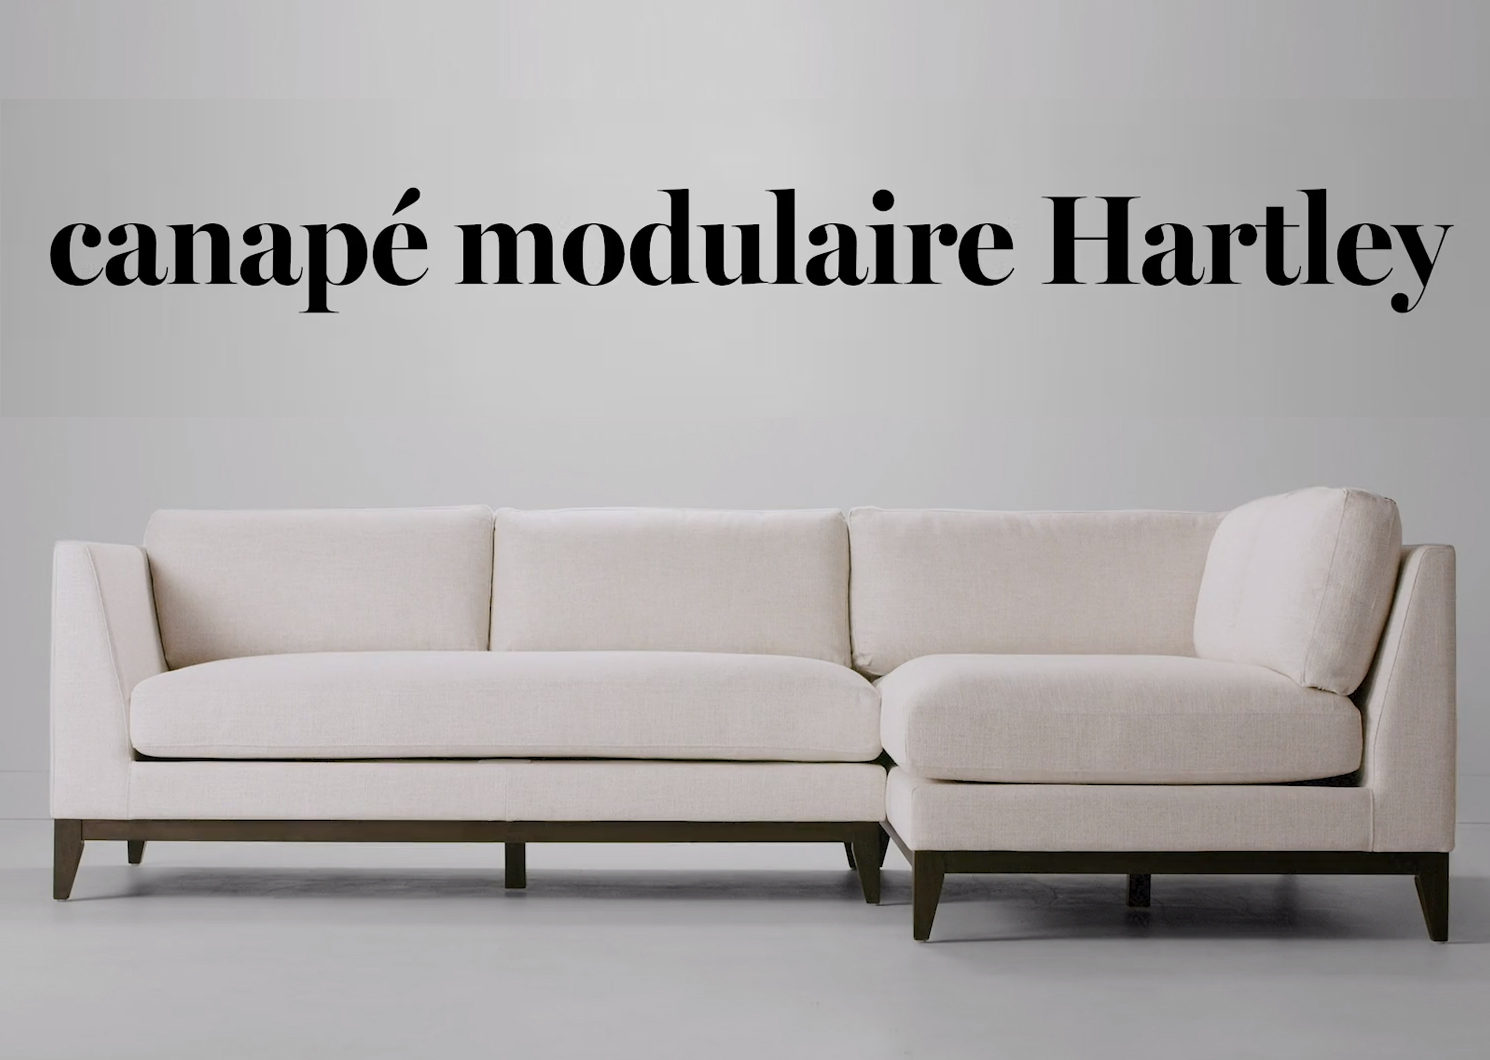 Canapé modulaire Hartley -Zeile lin, g.